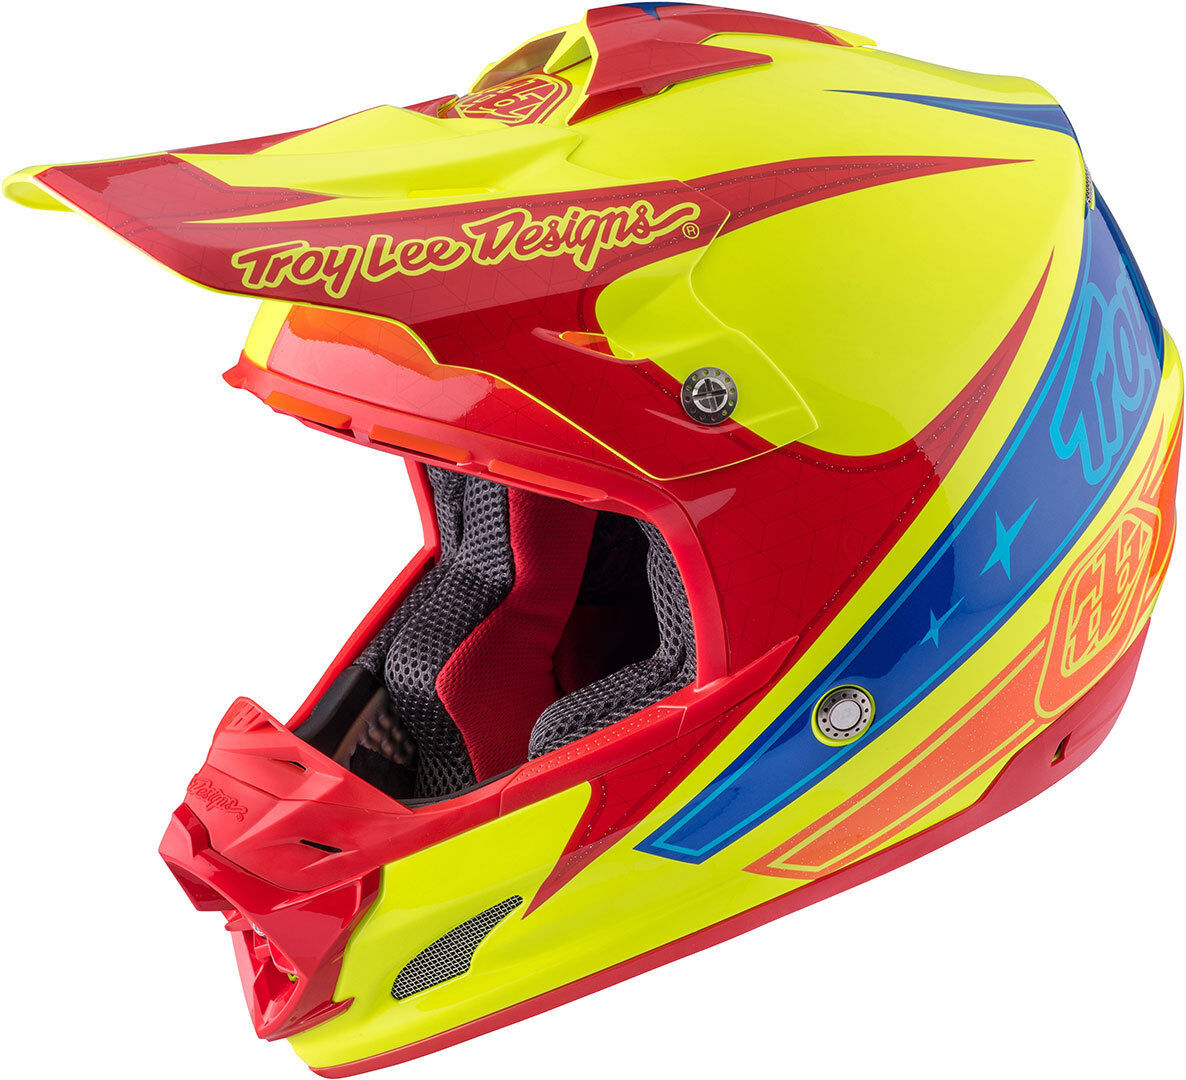 Lee Troy Lee Designs Se3 Corse 2 Motorcycle Cross Helmet  - Yellow